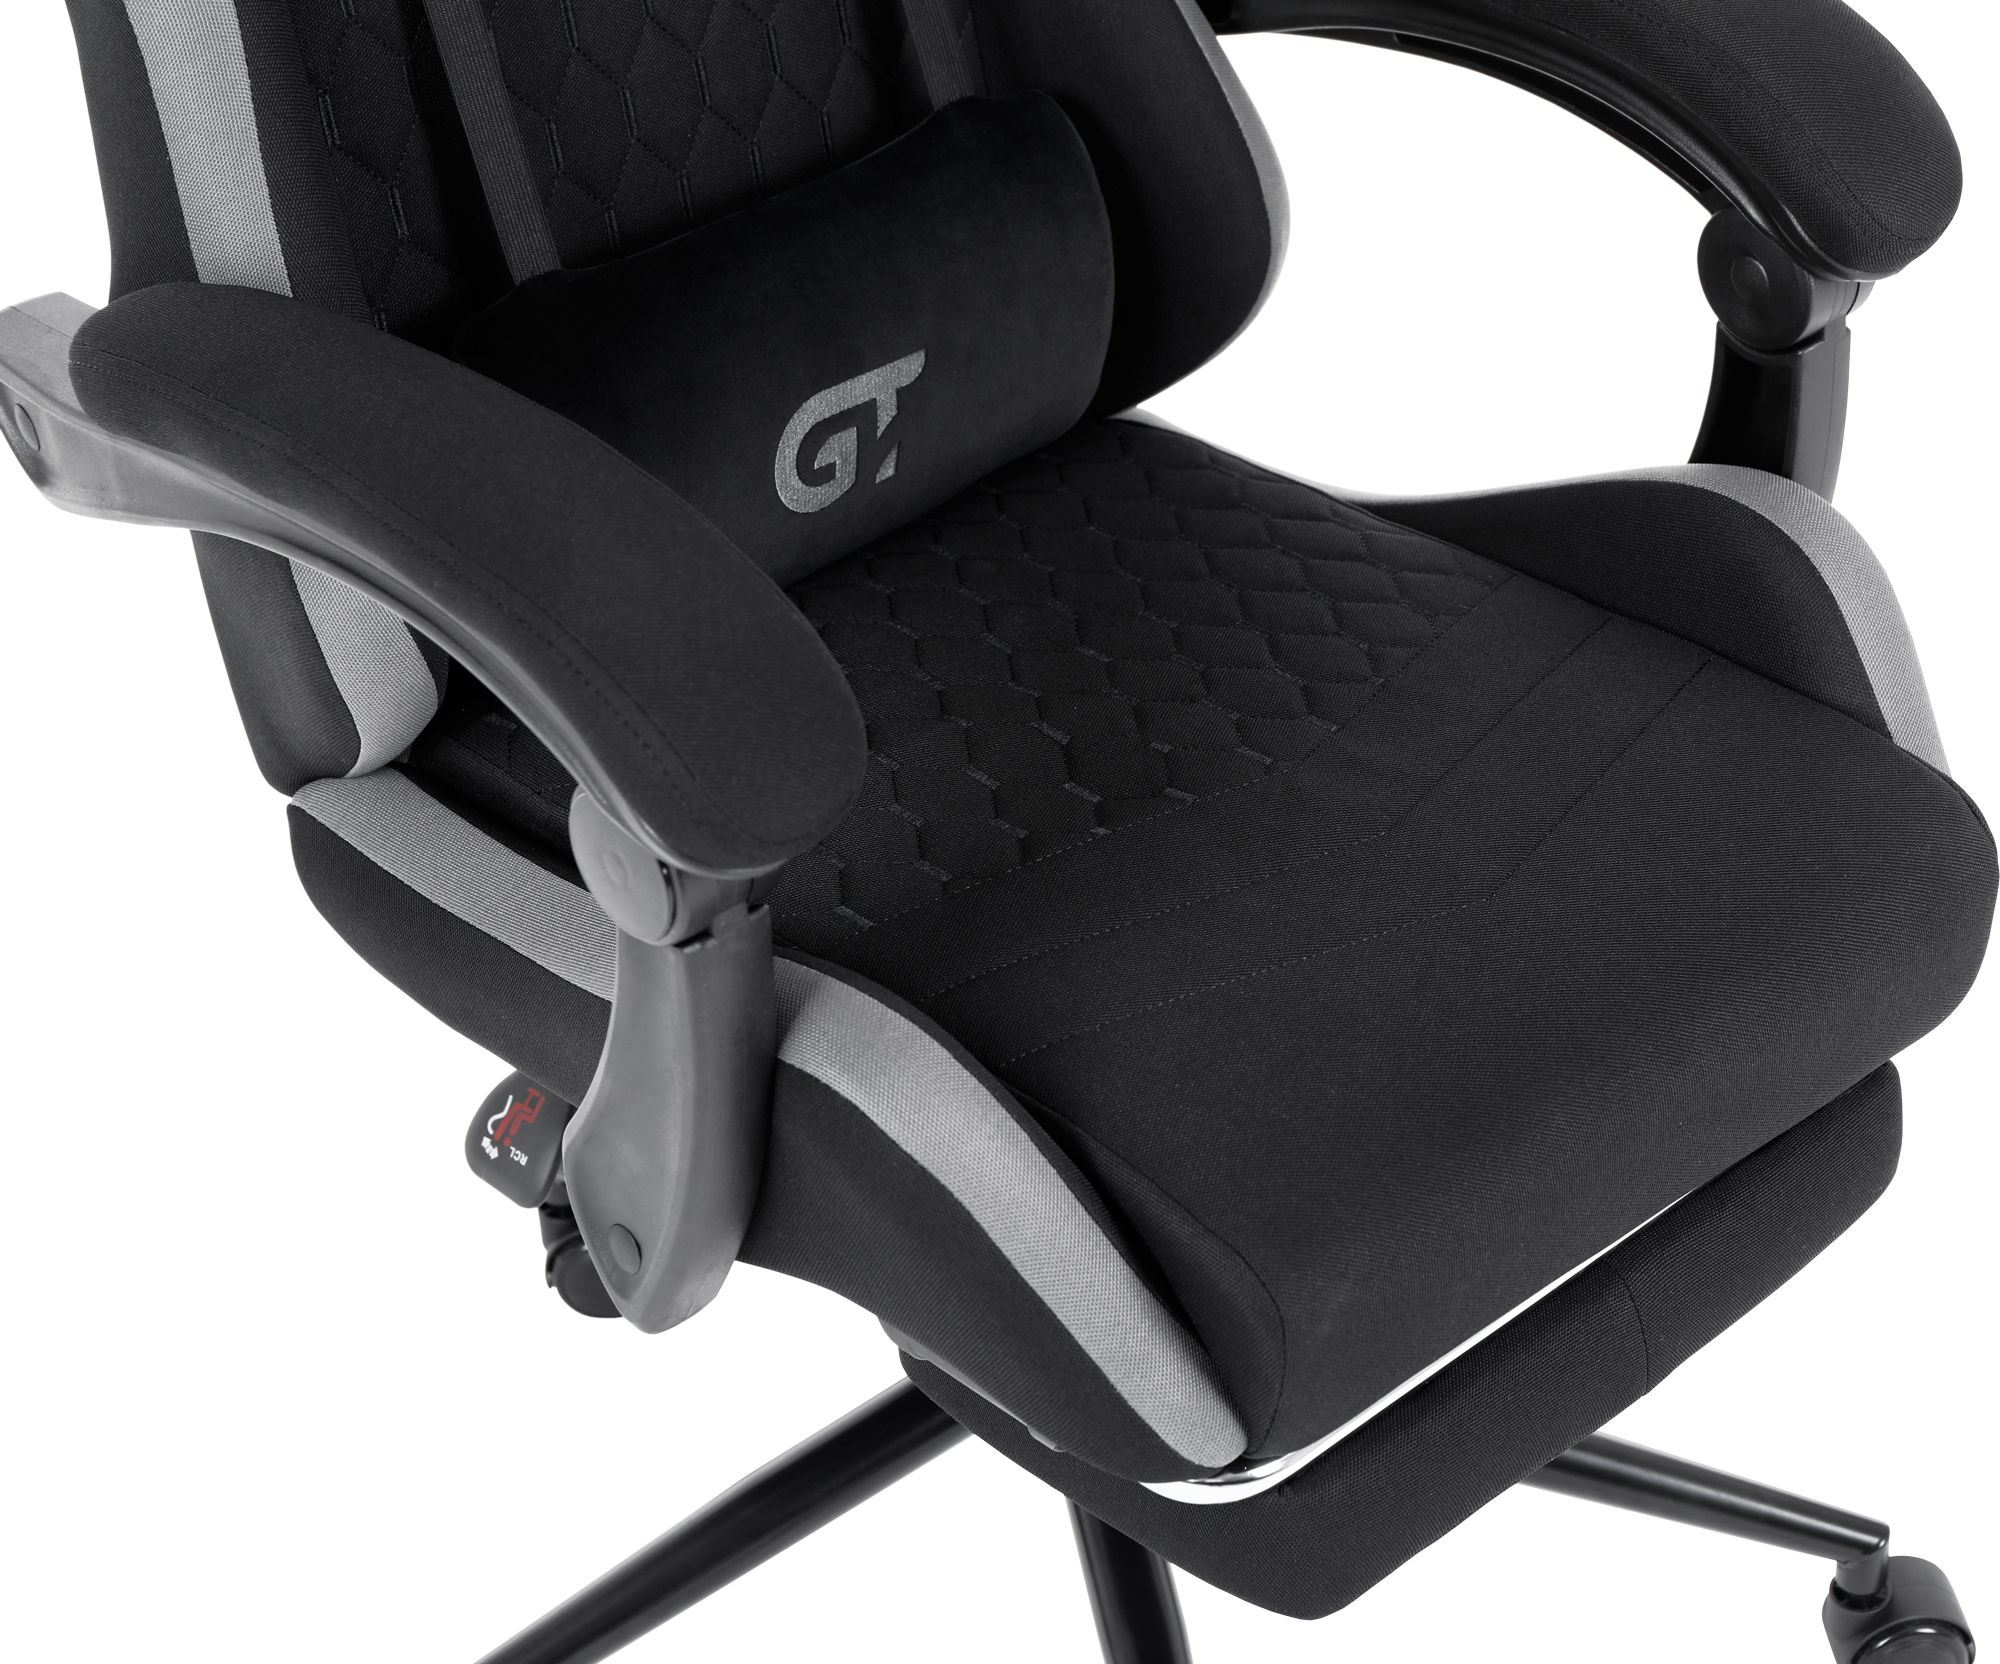 Геймерское кресло GT Racer черное с серым (X-2324 Fabric Black/Gray) - фото 6